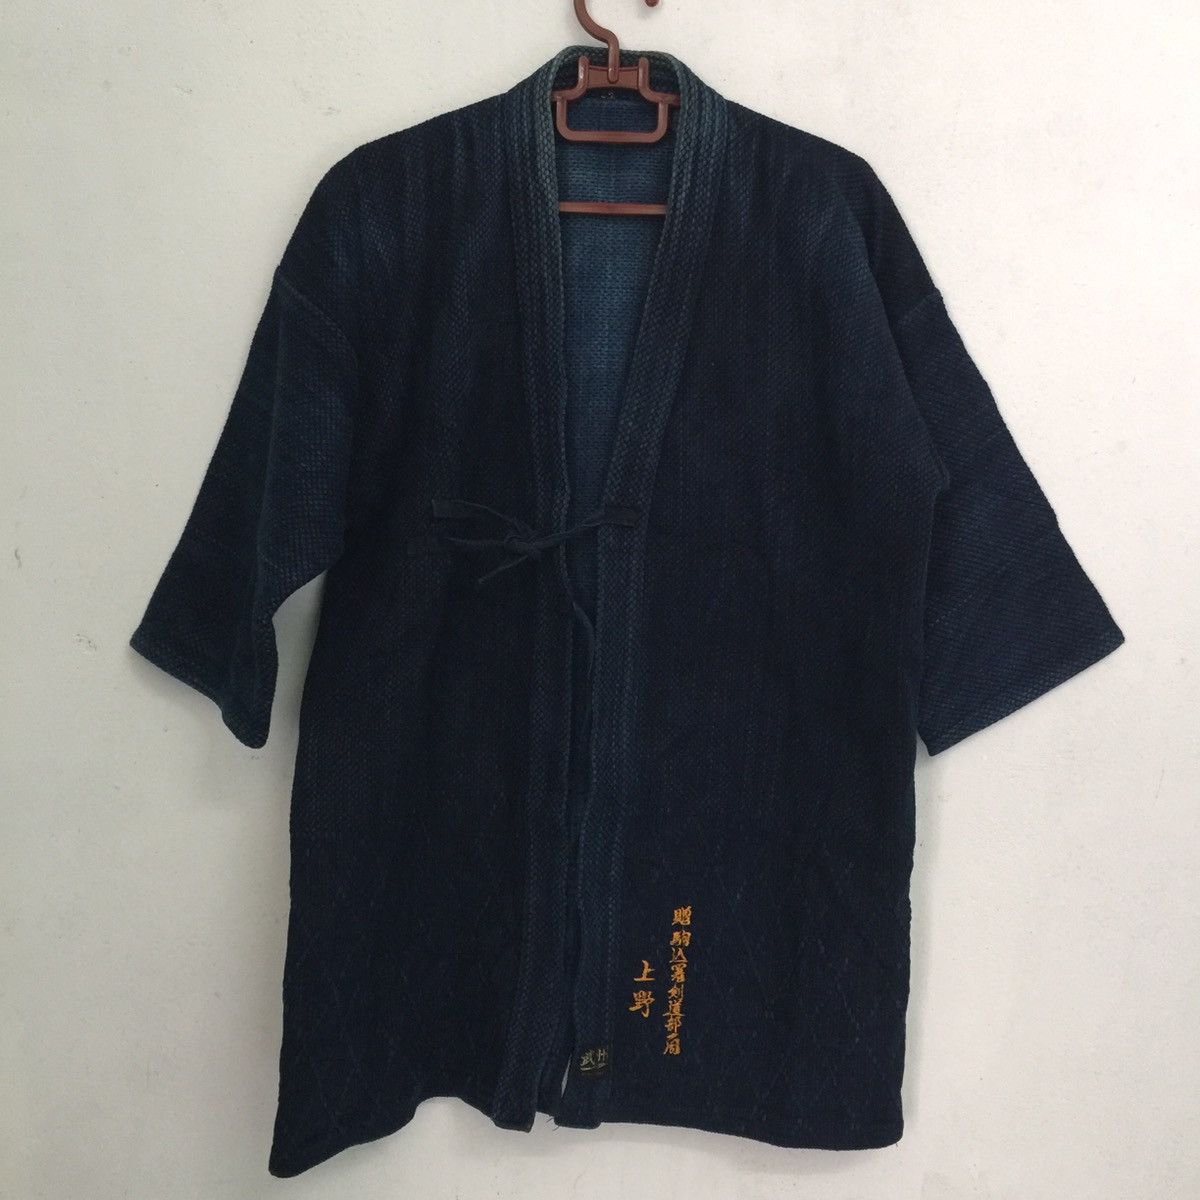 Japanese Brand Kimono Cardigan Wrap Like Sanjuro Style Japanese Brand ...